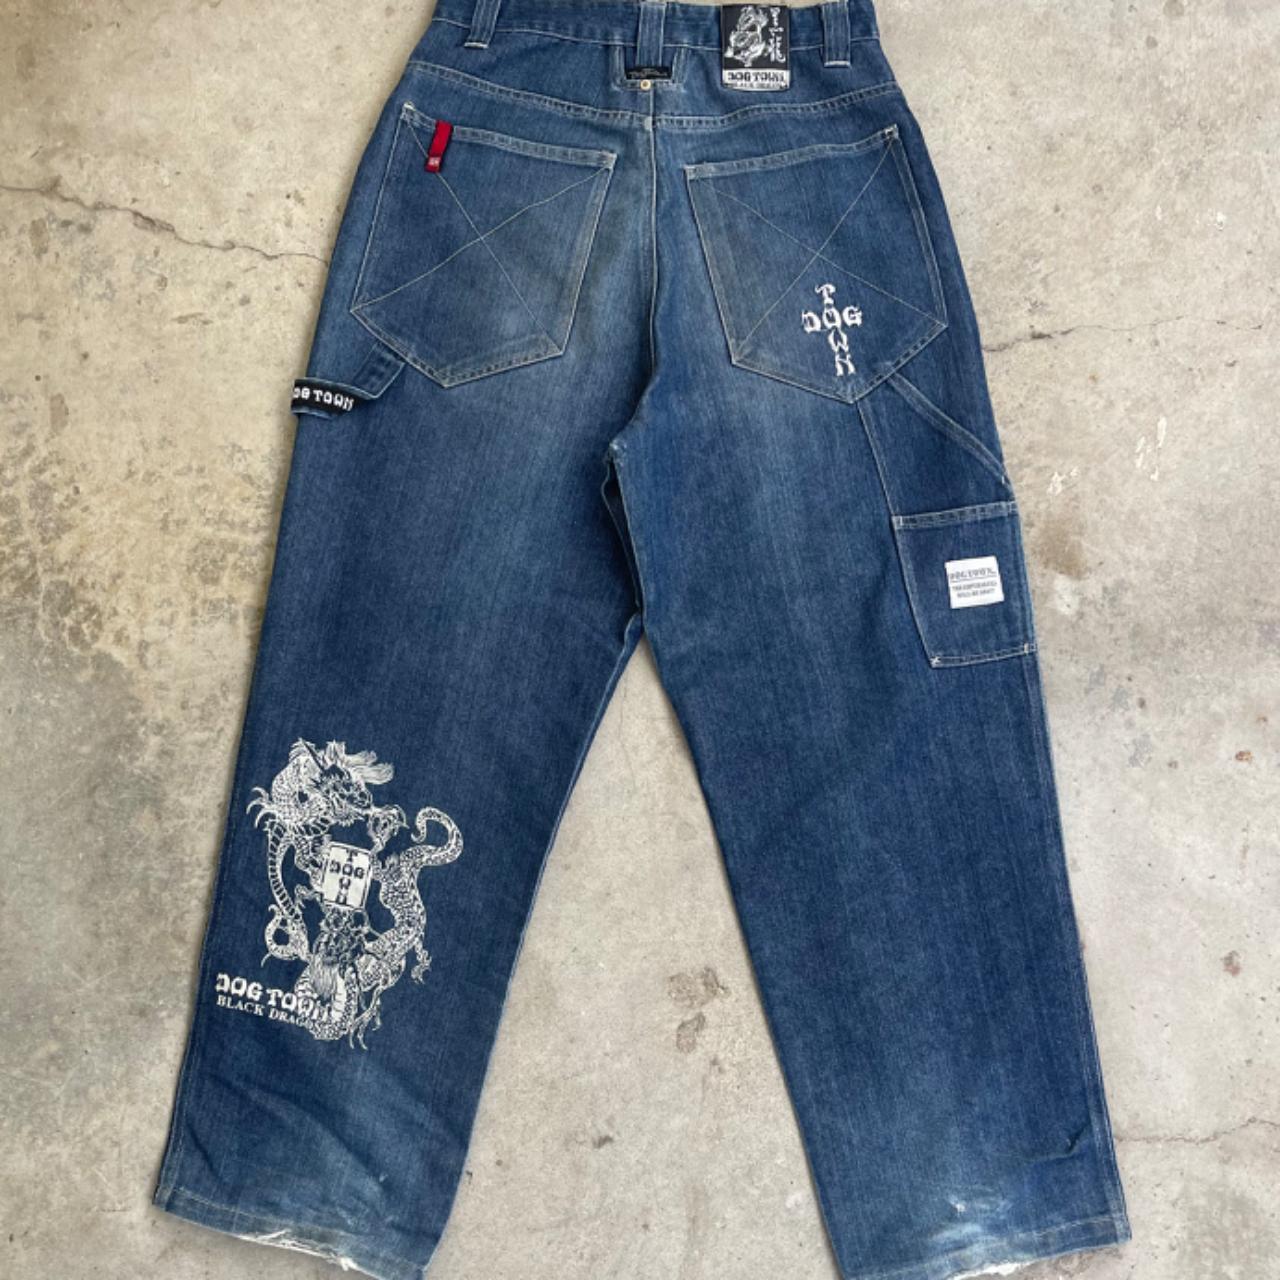 Vintage dog town baggy skate jeans - size 31 waist - Depop